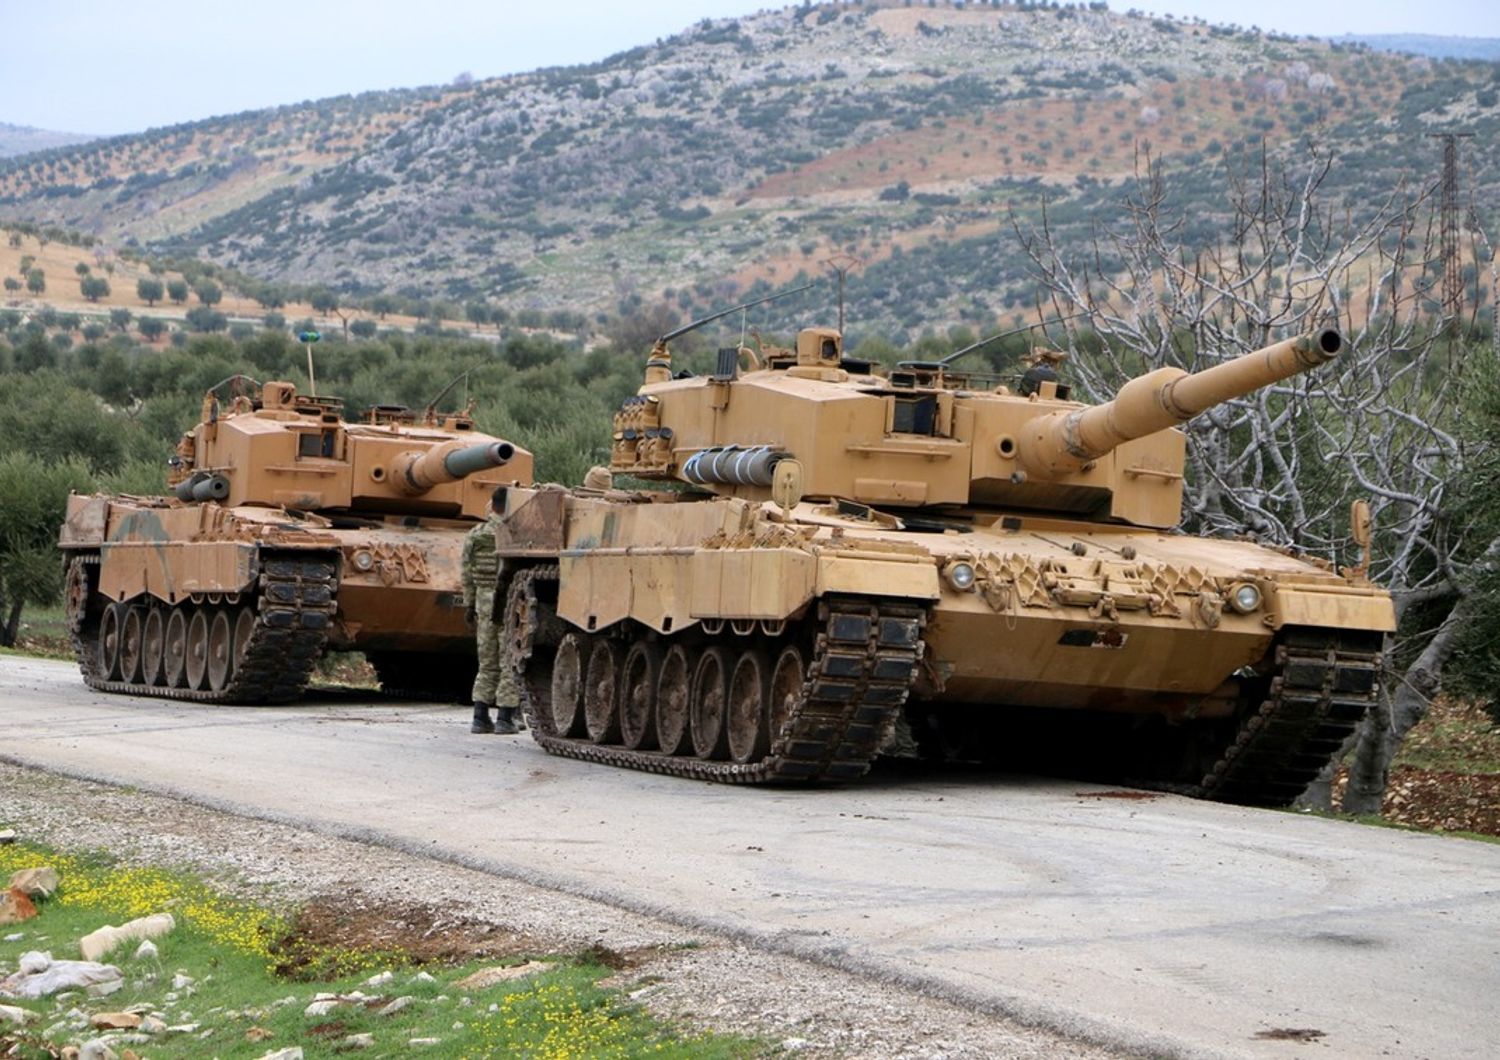 &nbsp;Carri armati alle porte di Afrin